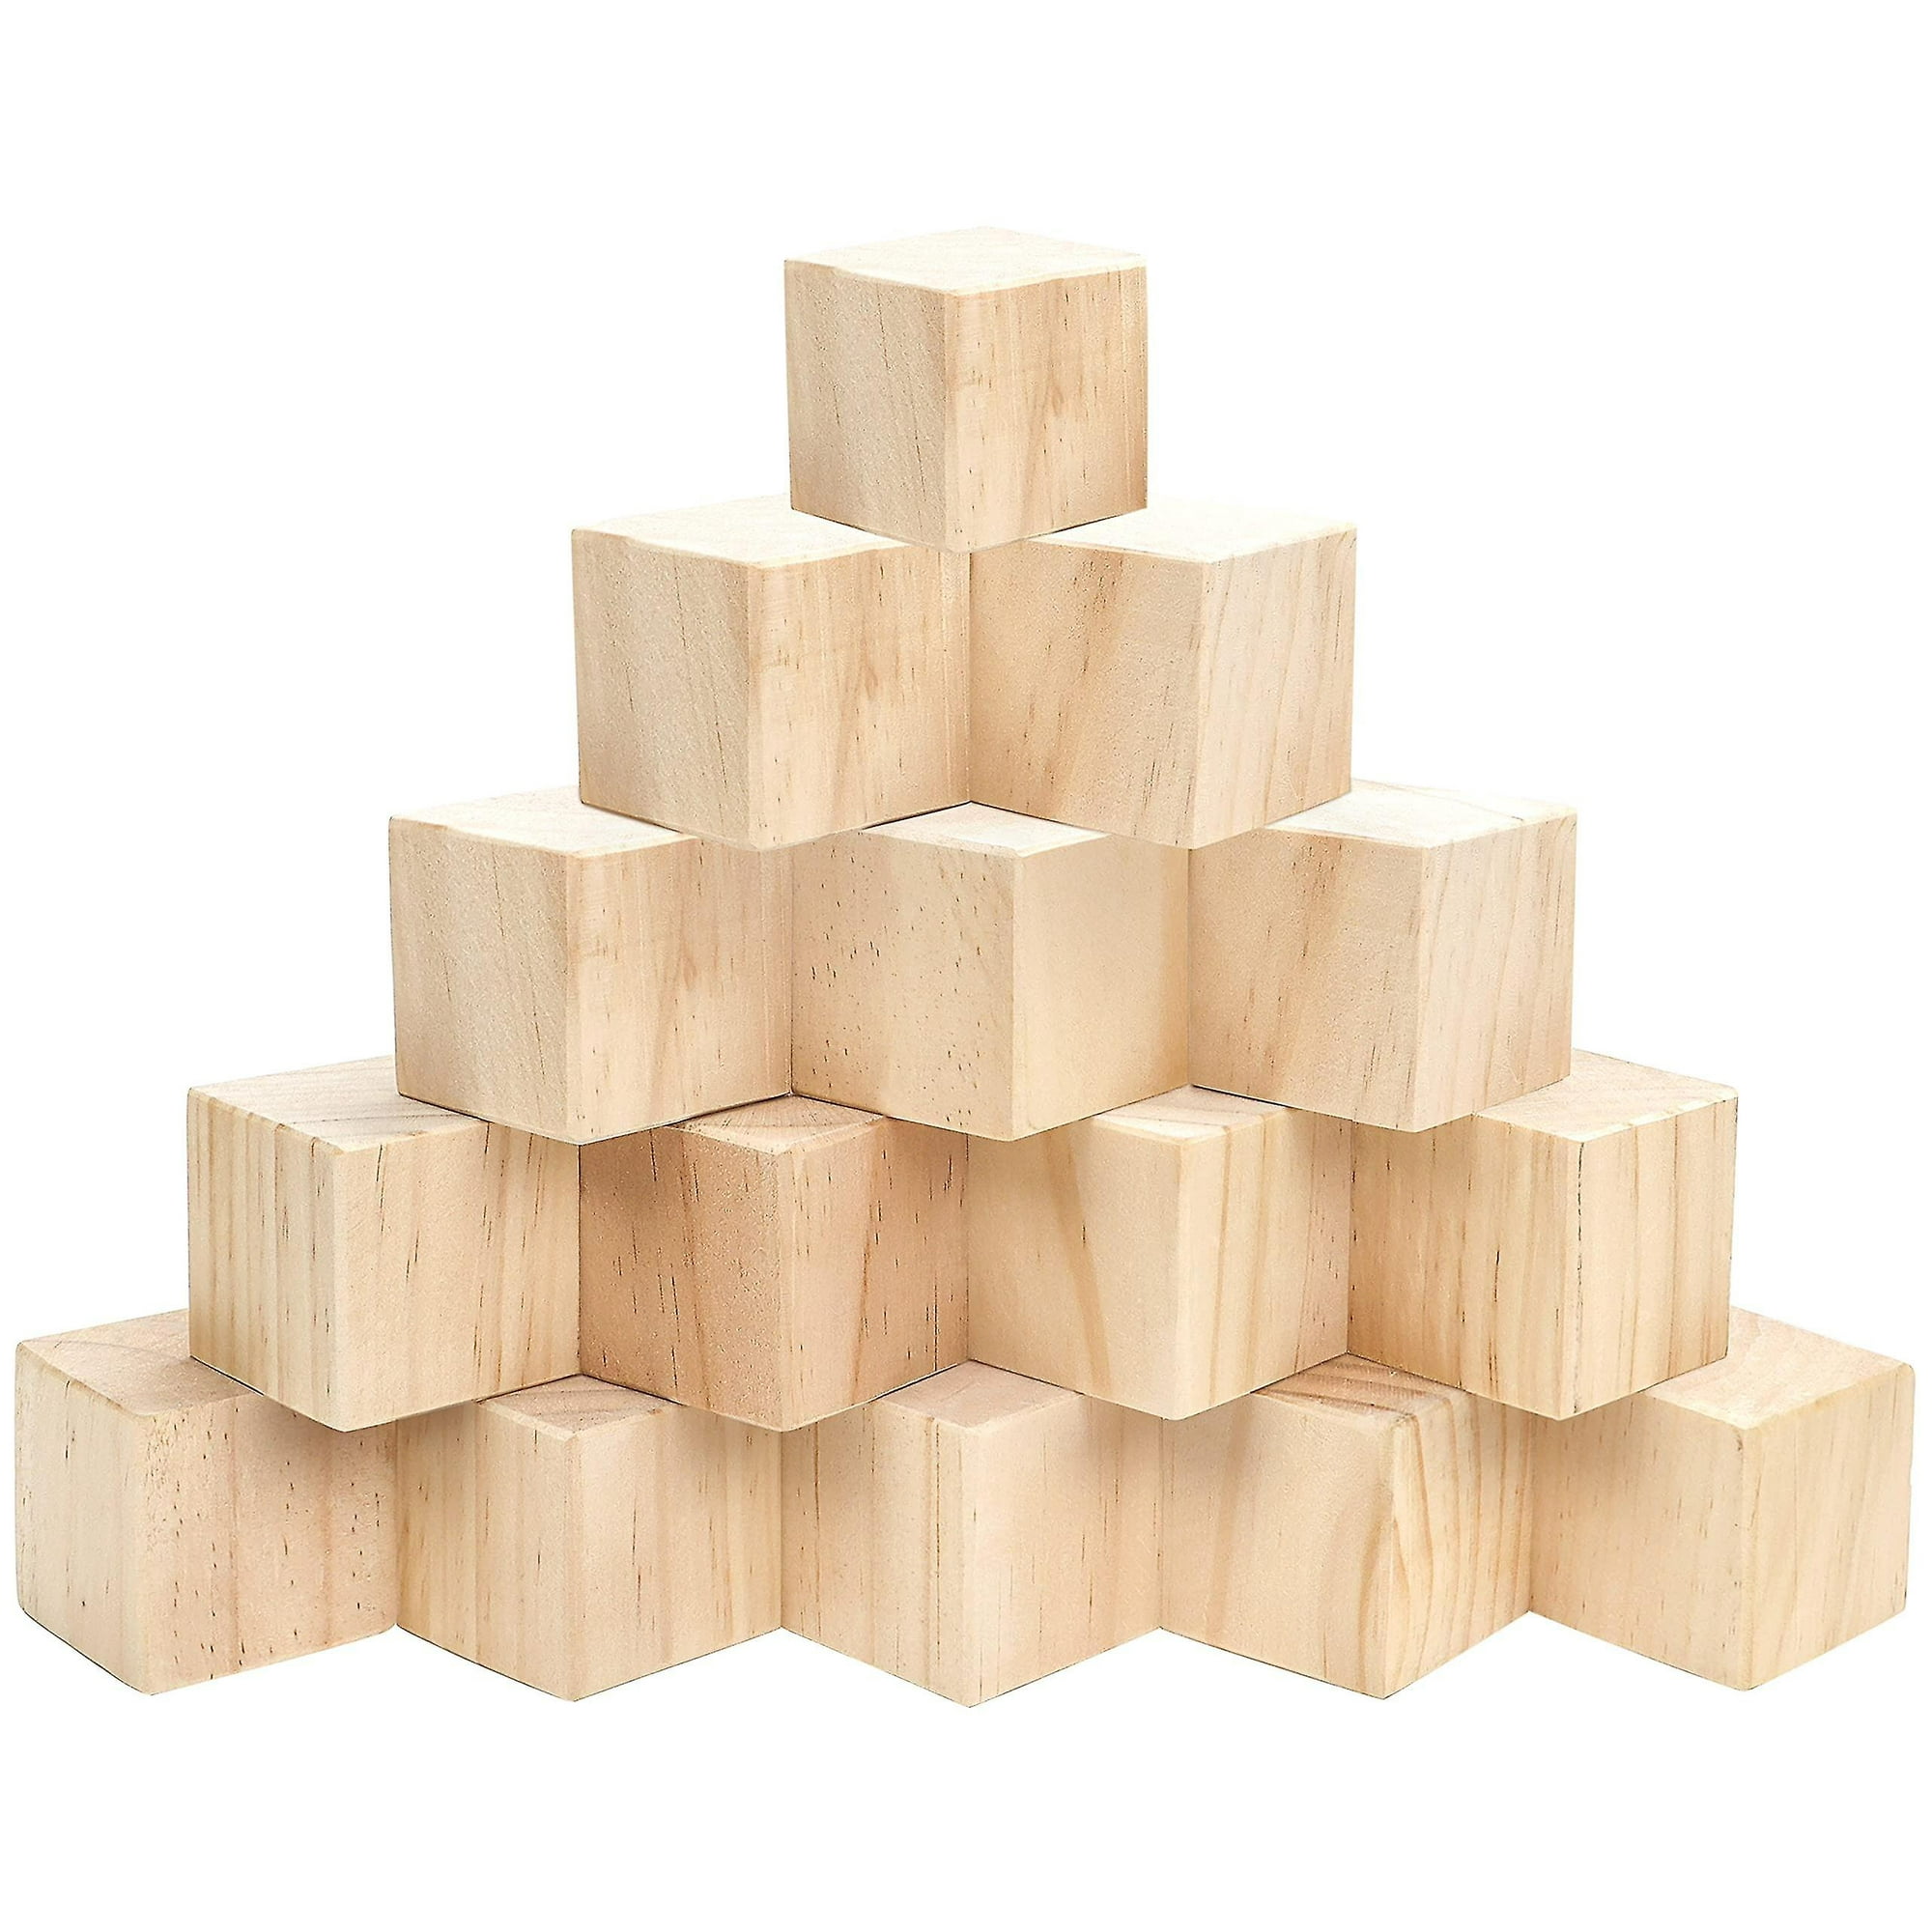 25g Cubos de madera (paquete de 50) 2 x 2 x 2 cm (0,78 x 0,78 x 0,78  pulgadas) cubos de madera bloques de madera de pino sin terminar YONGSHENG  8390613360960